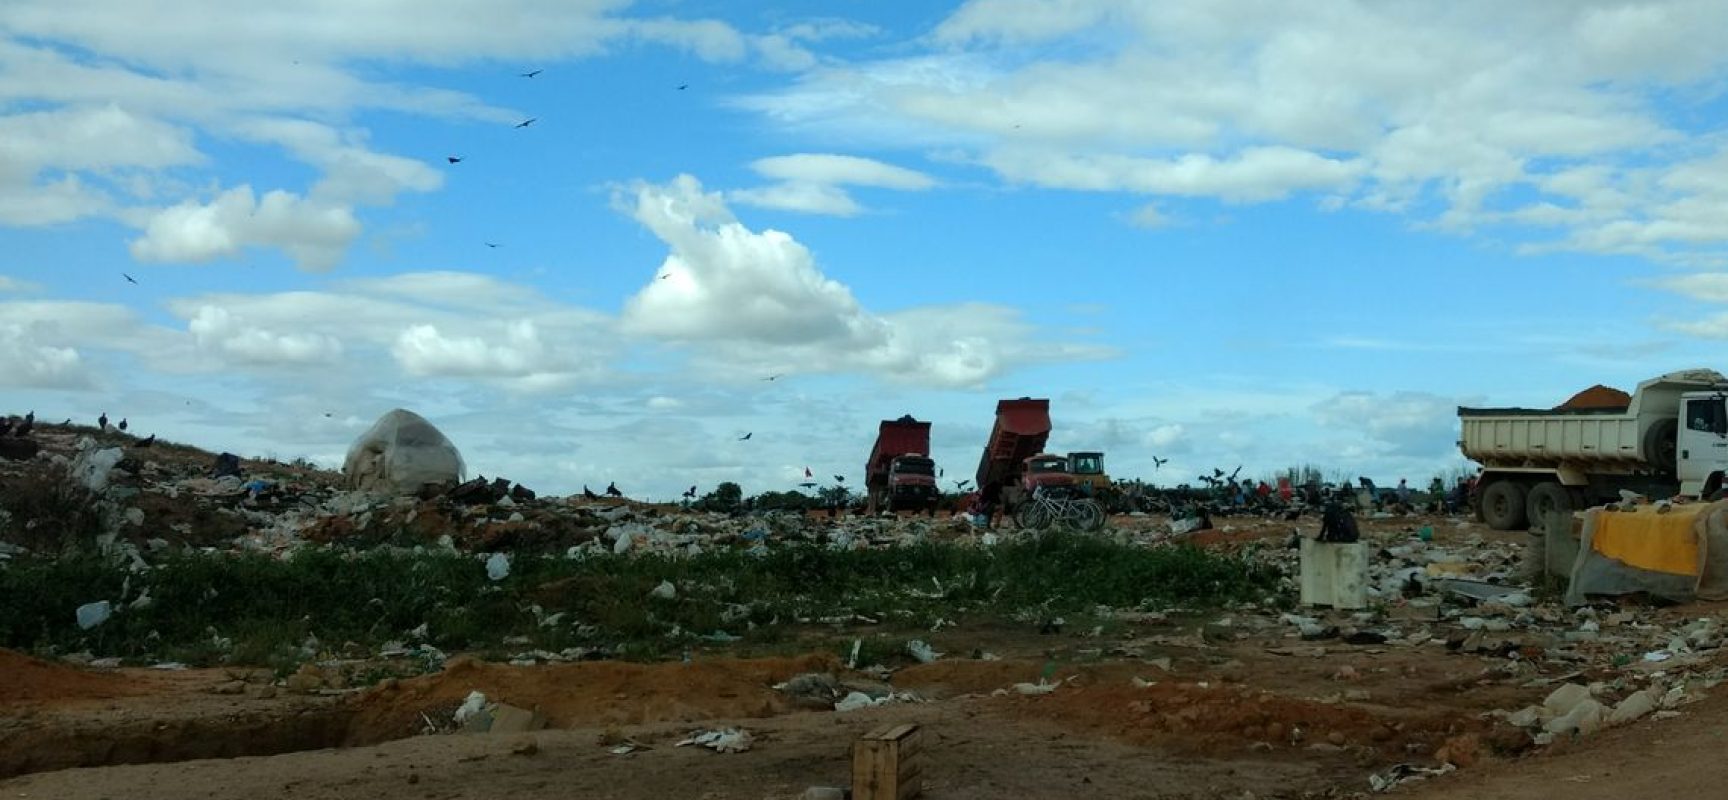 Adiar fechamento de lixões é desserviço, diz ministro do Meio Ambiente